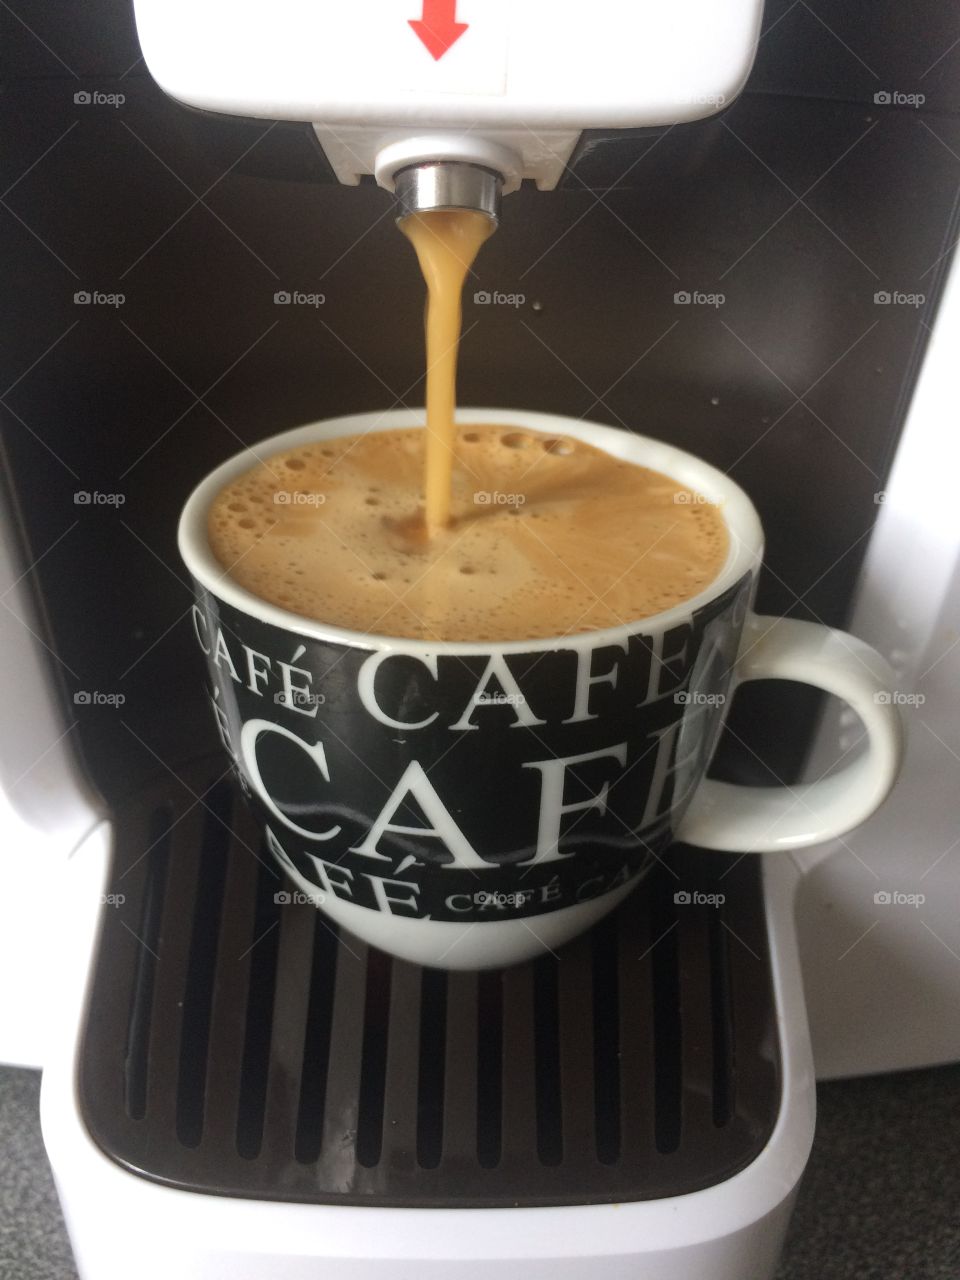 Perfect espresso time